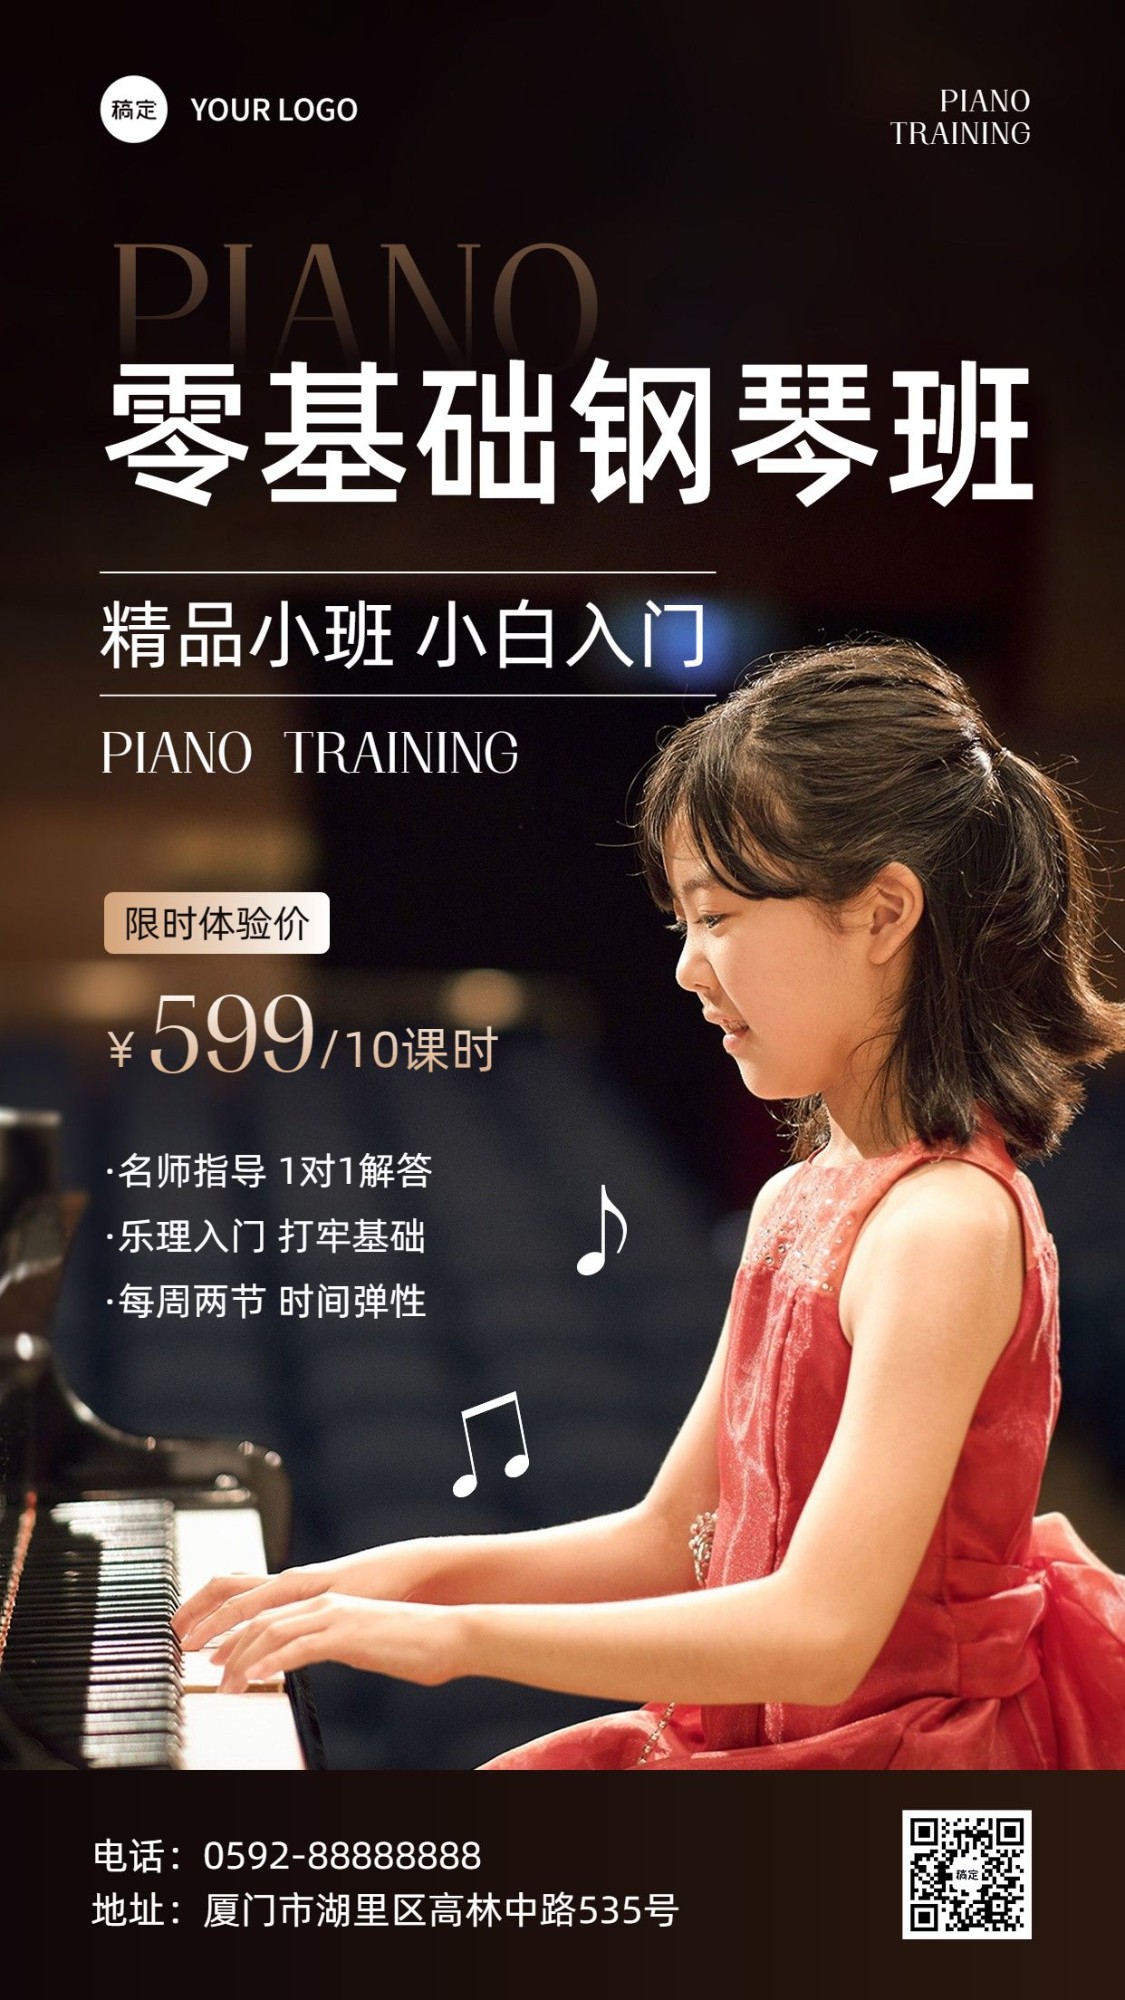 24艺术兴趣培训班钢琴课招生宣传手机海报